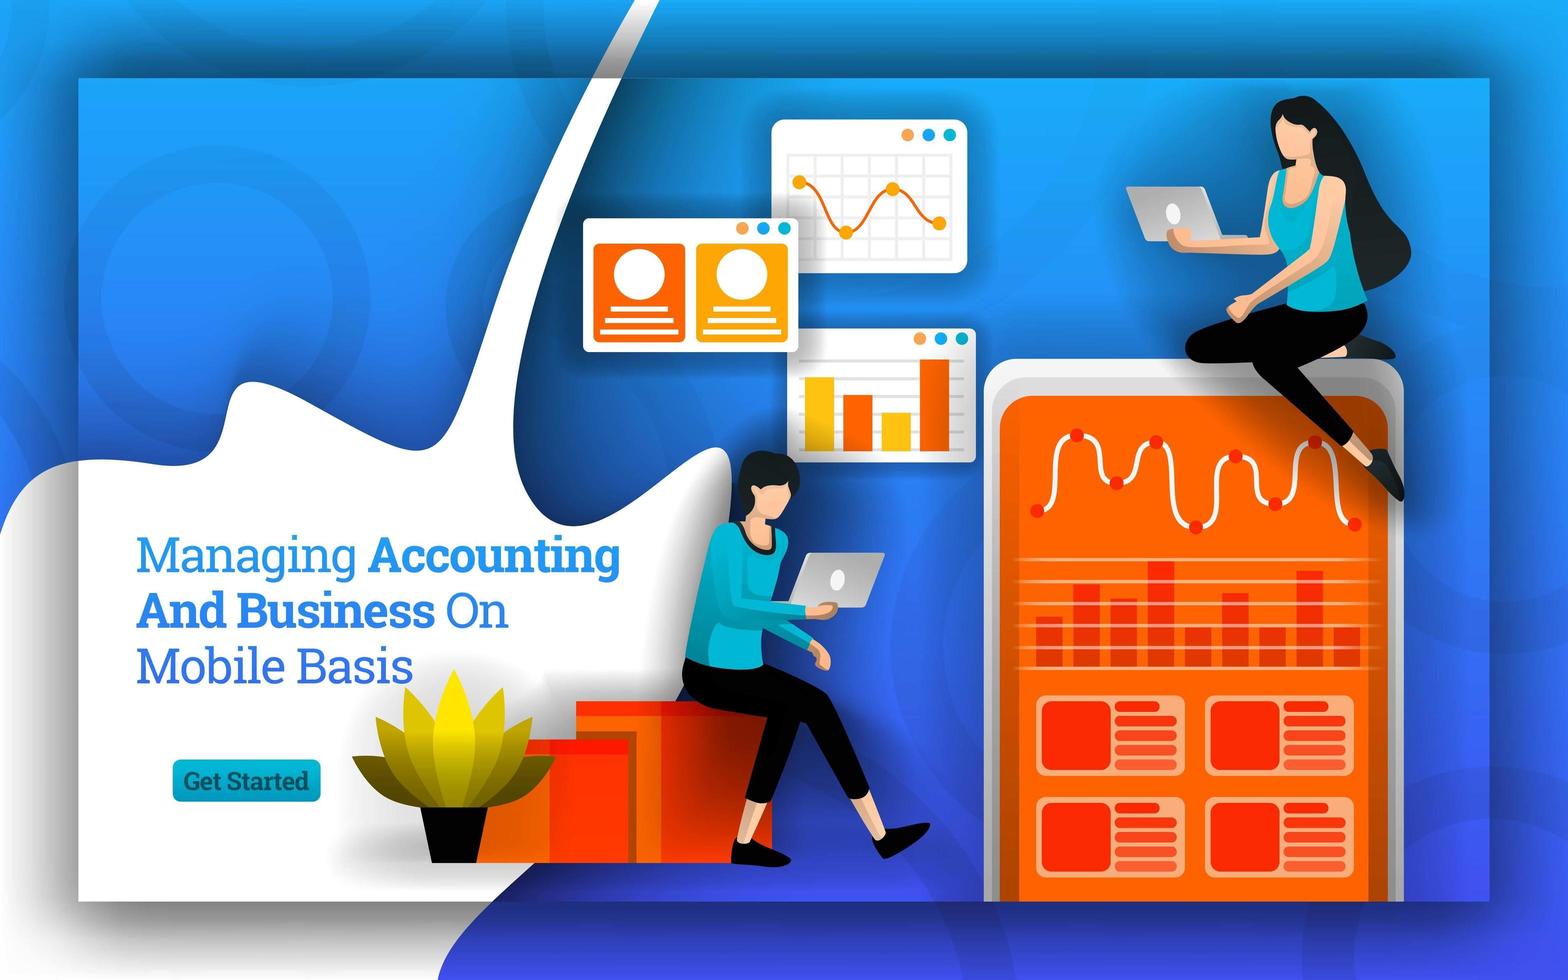 statistiques comptables simplifiées pour gérer la comptabilité et les affaires sur une base mobile. Les logiciels et applications de comptabilité facilitent la gestion de la comptabilité pour les entreprises personnelles et à domicile. style de vecteur plat